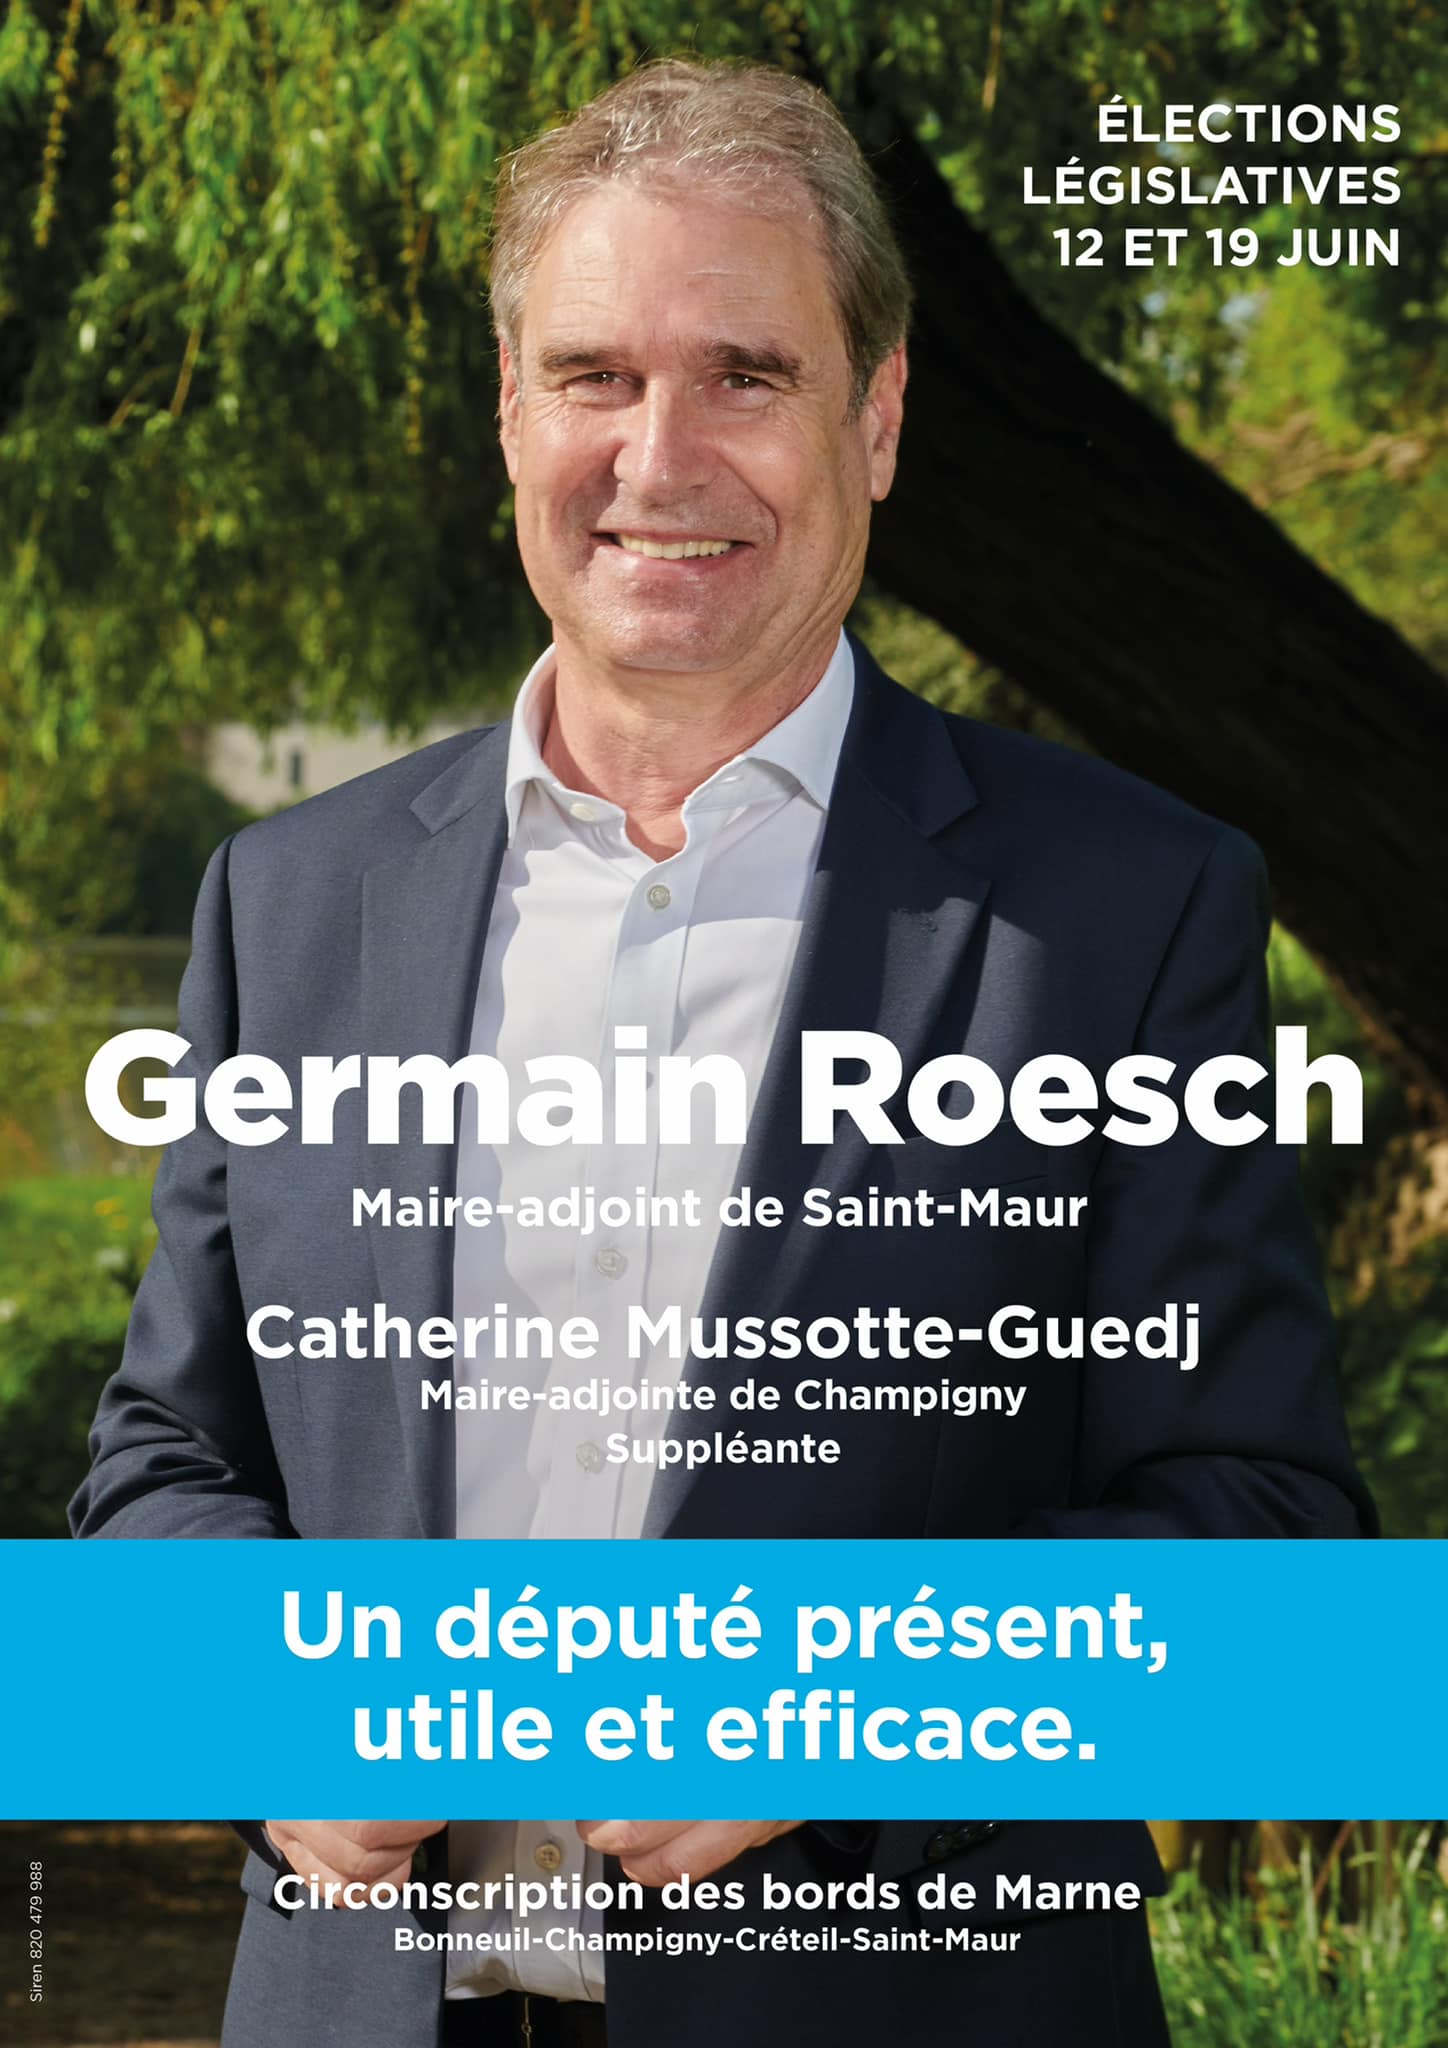 Germain Roesch, un député impliqué